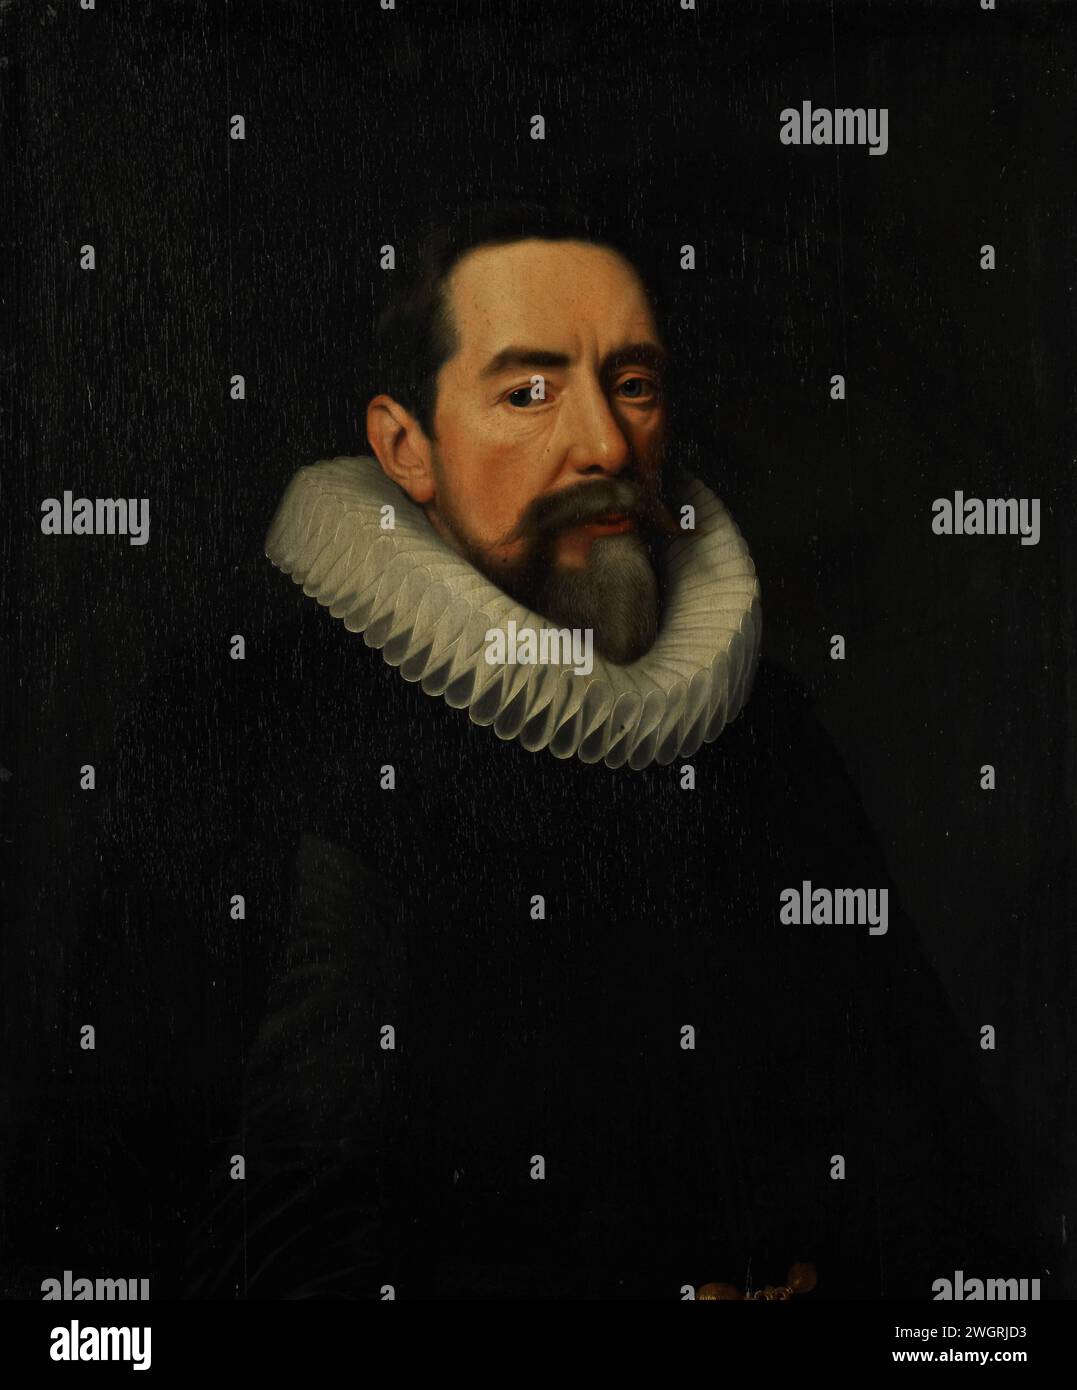 Porträt eines Mannes, Cornelis van der Voort, in oder nach ca. 1648 Gemälde Porträt eines Mannes, halb rechts, eine Falte um den Hals. Bereich. Ölfarbe (Farbe) Nackenrad  Kleidung (mit NAME). Anonyme historische Person porträtiert Stockfoto